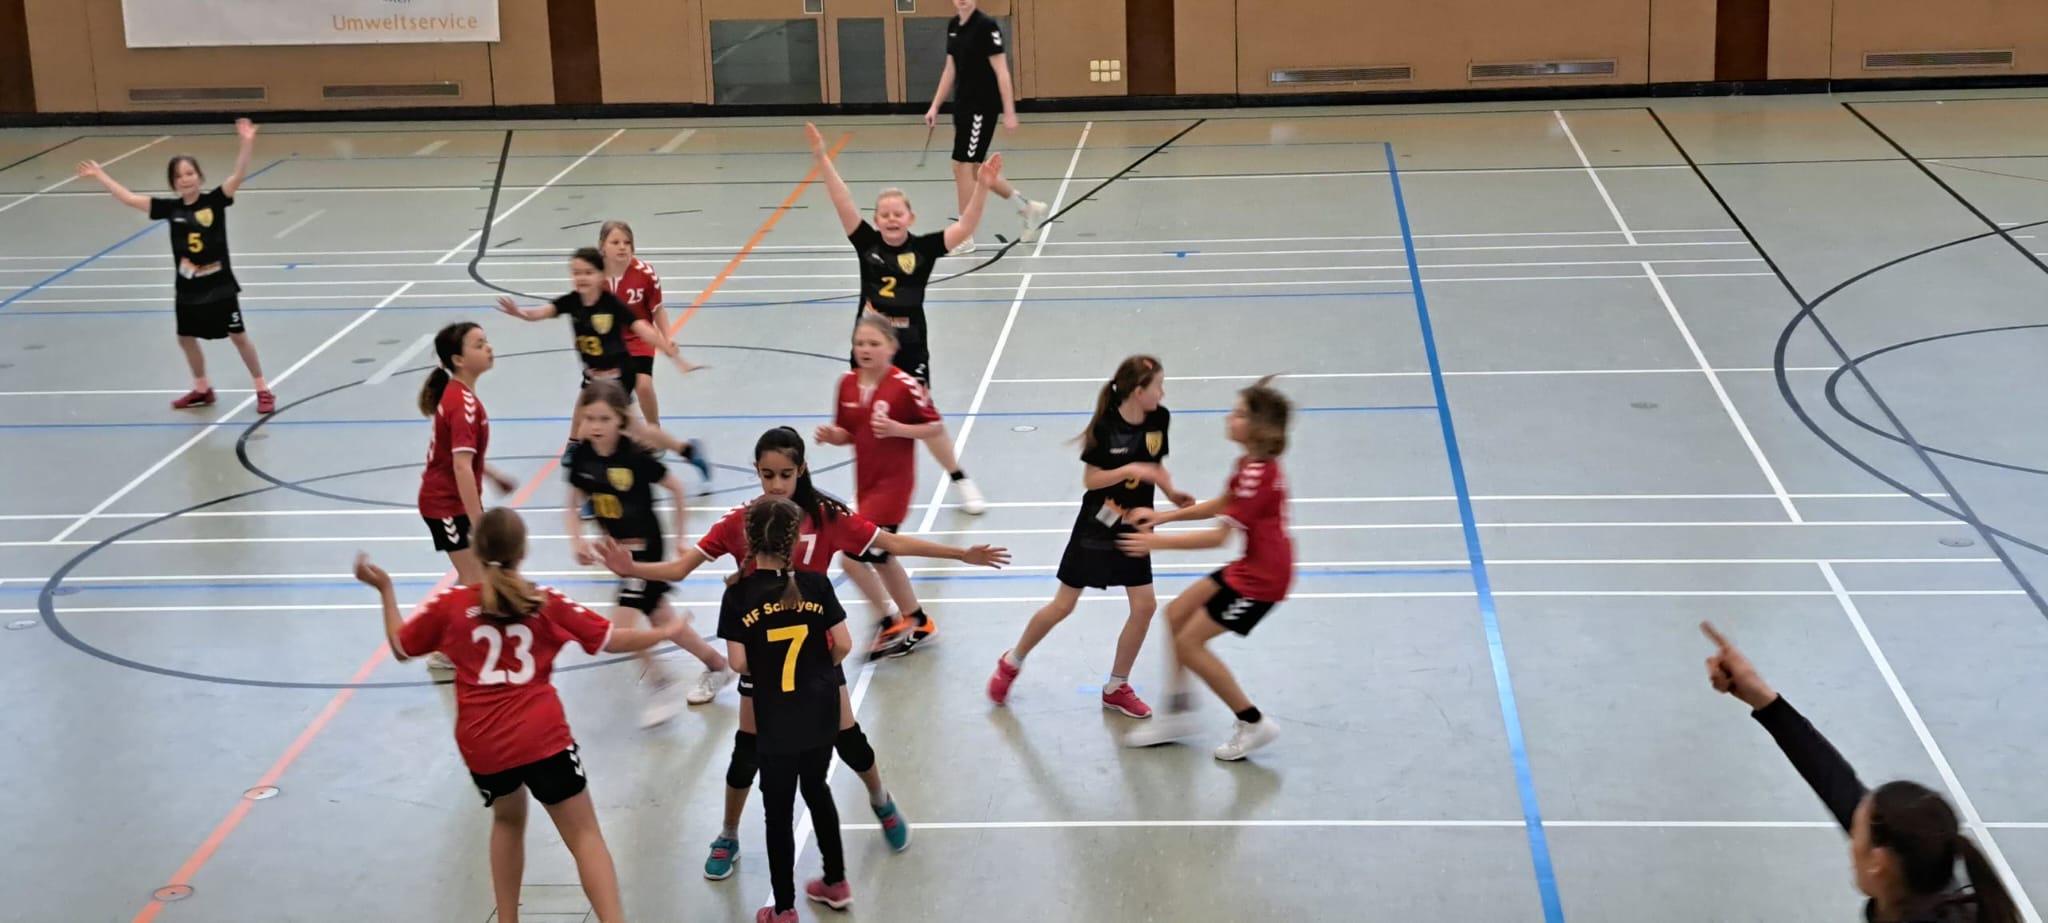 Die weibliche E II der Handball-Füchse beim KHB-Turnier in Schrobenhausen